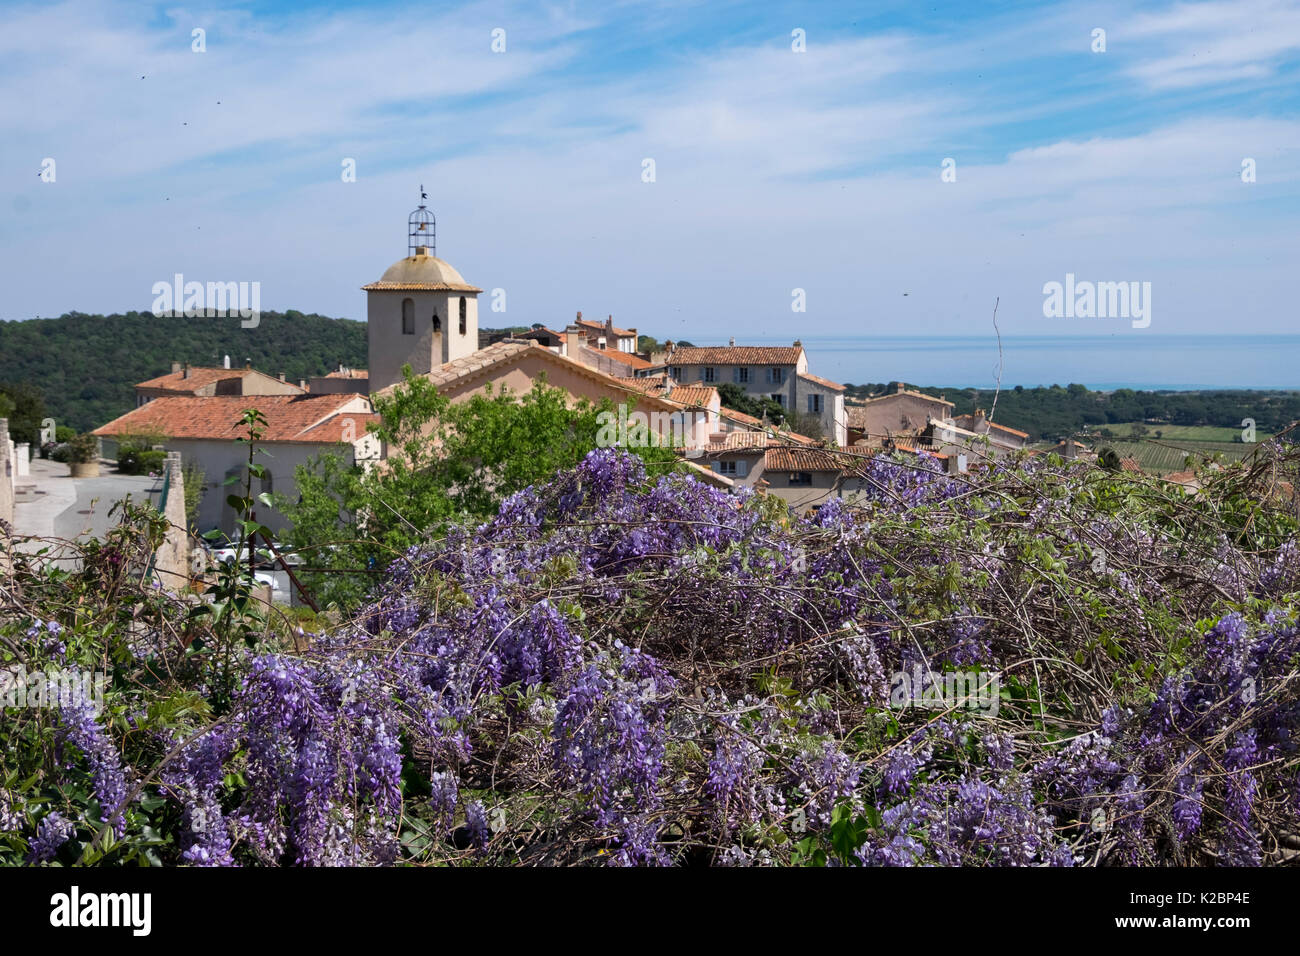 Vue panoramique sur le village provençal de Ramatuelle sur la côte d'Azur de glycine en fleur au printemps Banque D'Images